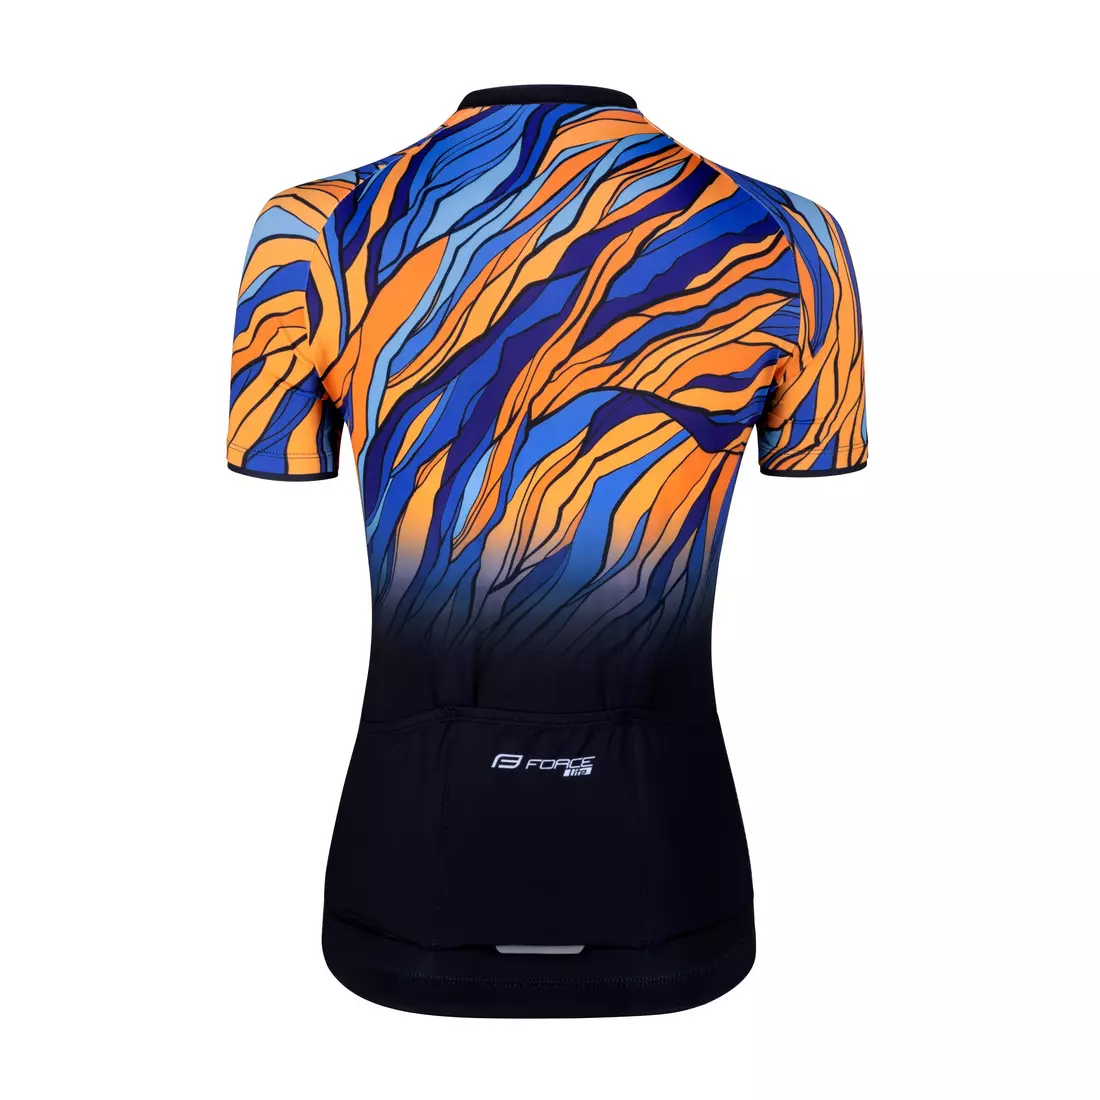 FORCE LIFE LADY dámský cyklistický dres, černá, modrá a oranžová